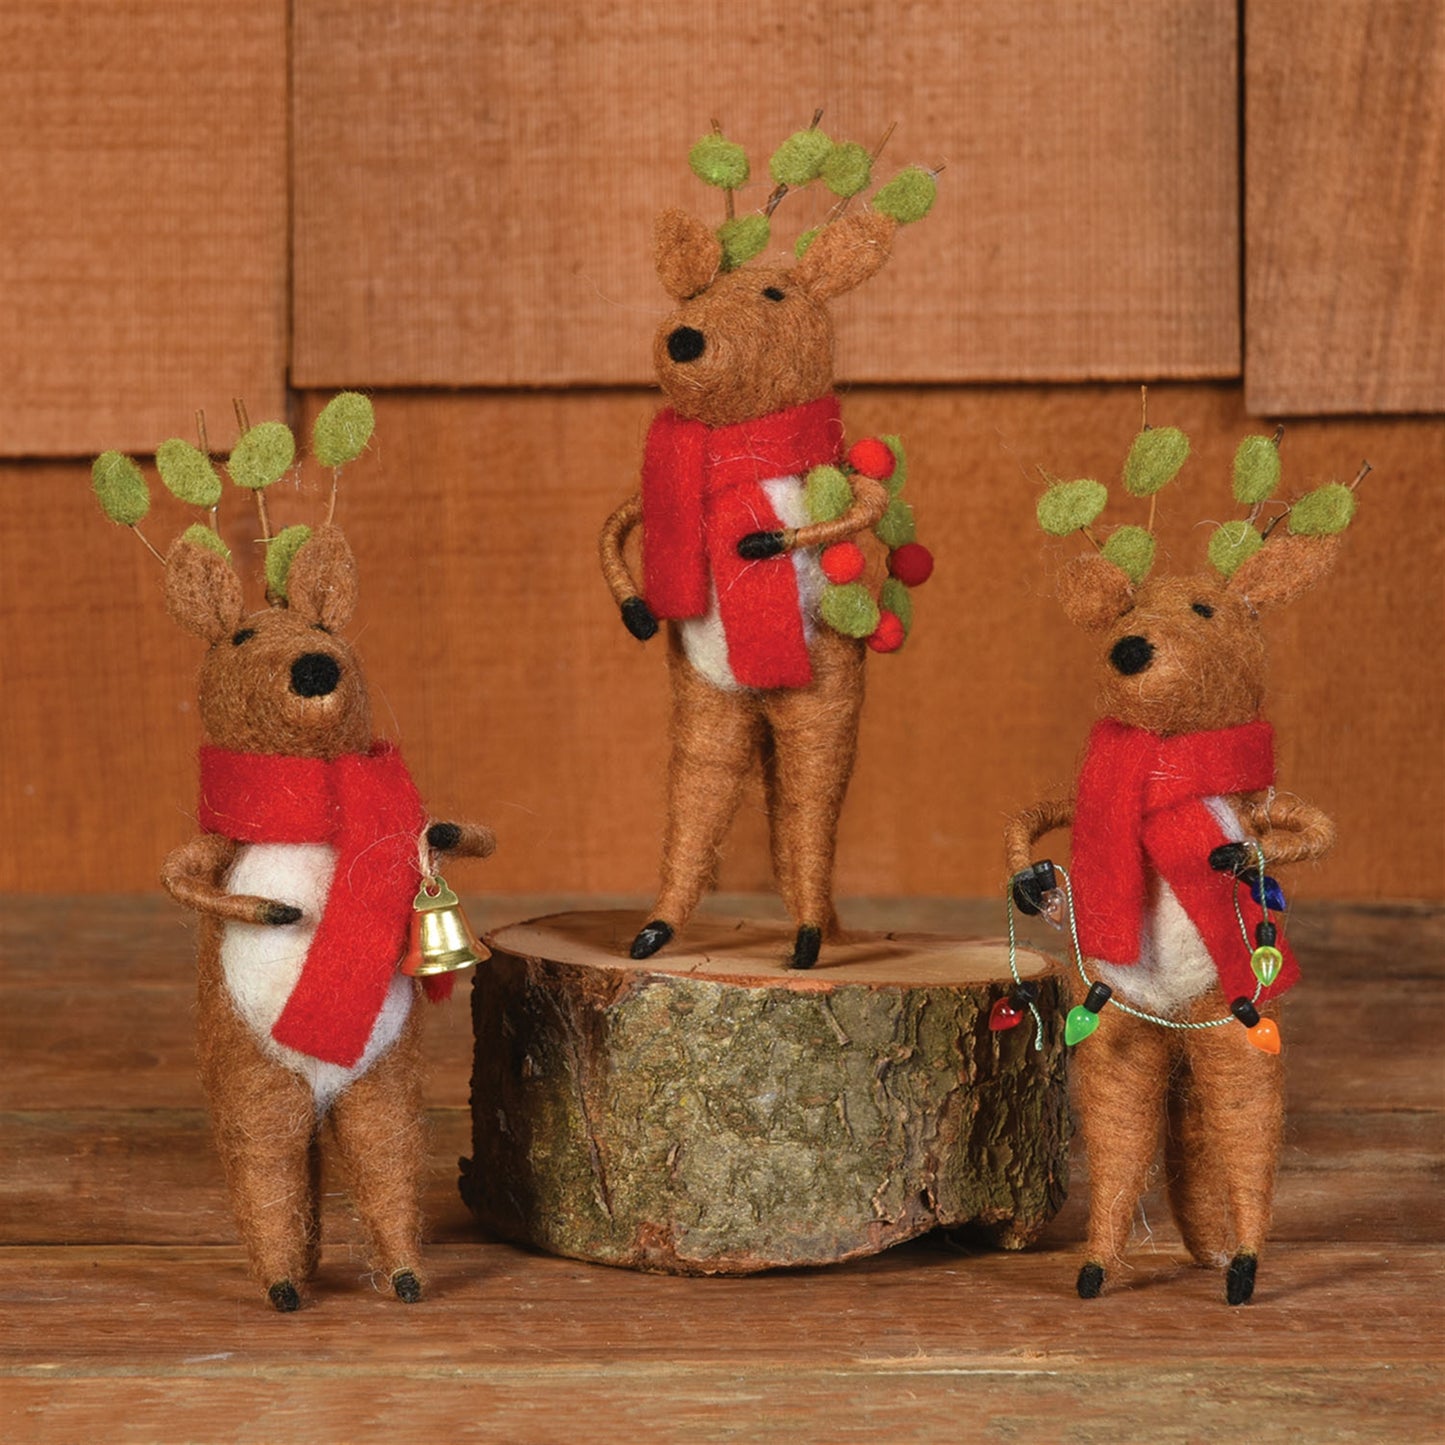 Christmas-ornament-cute-felt-reindeer-set-of-three-on-table